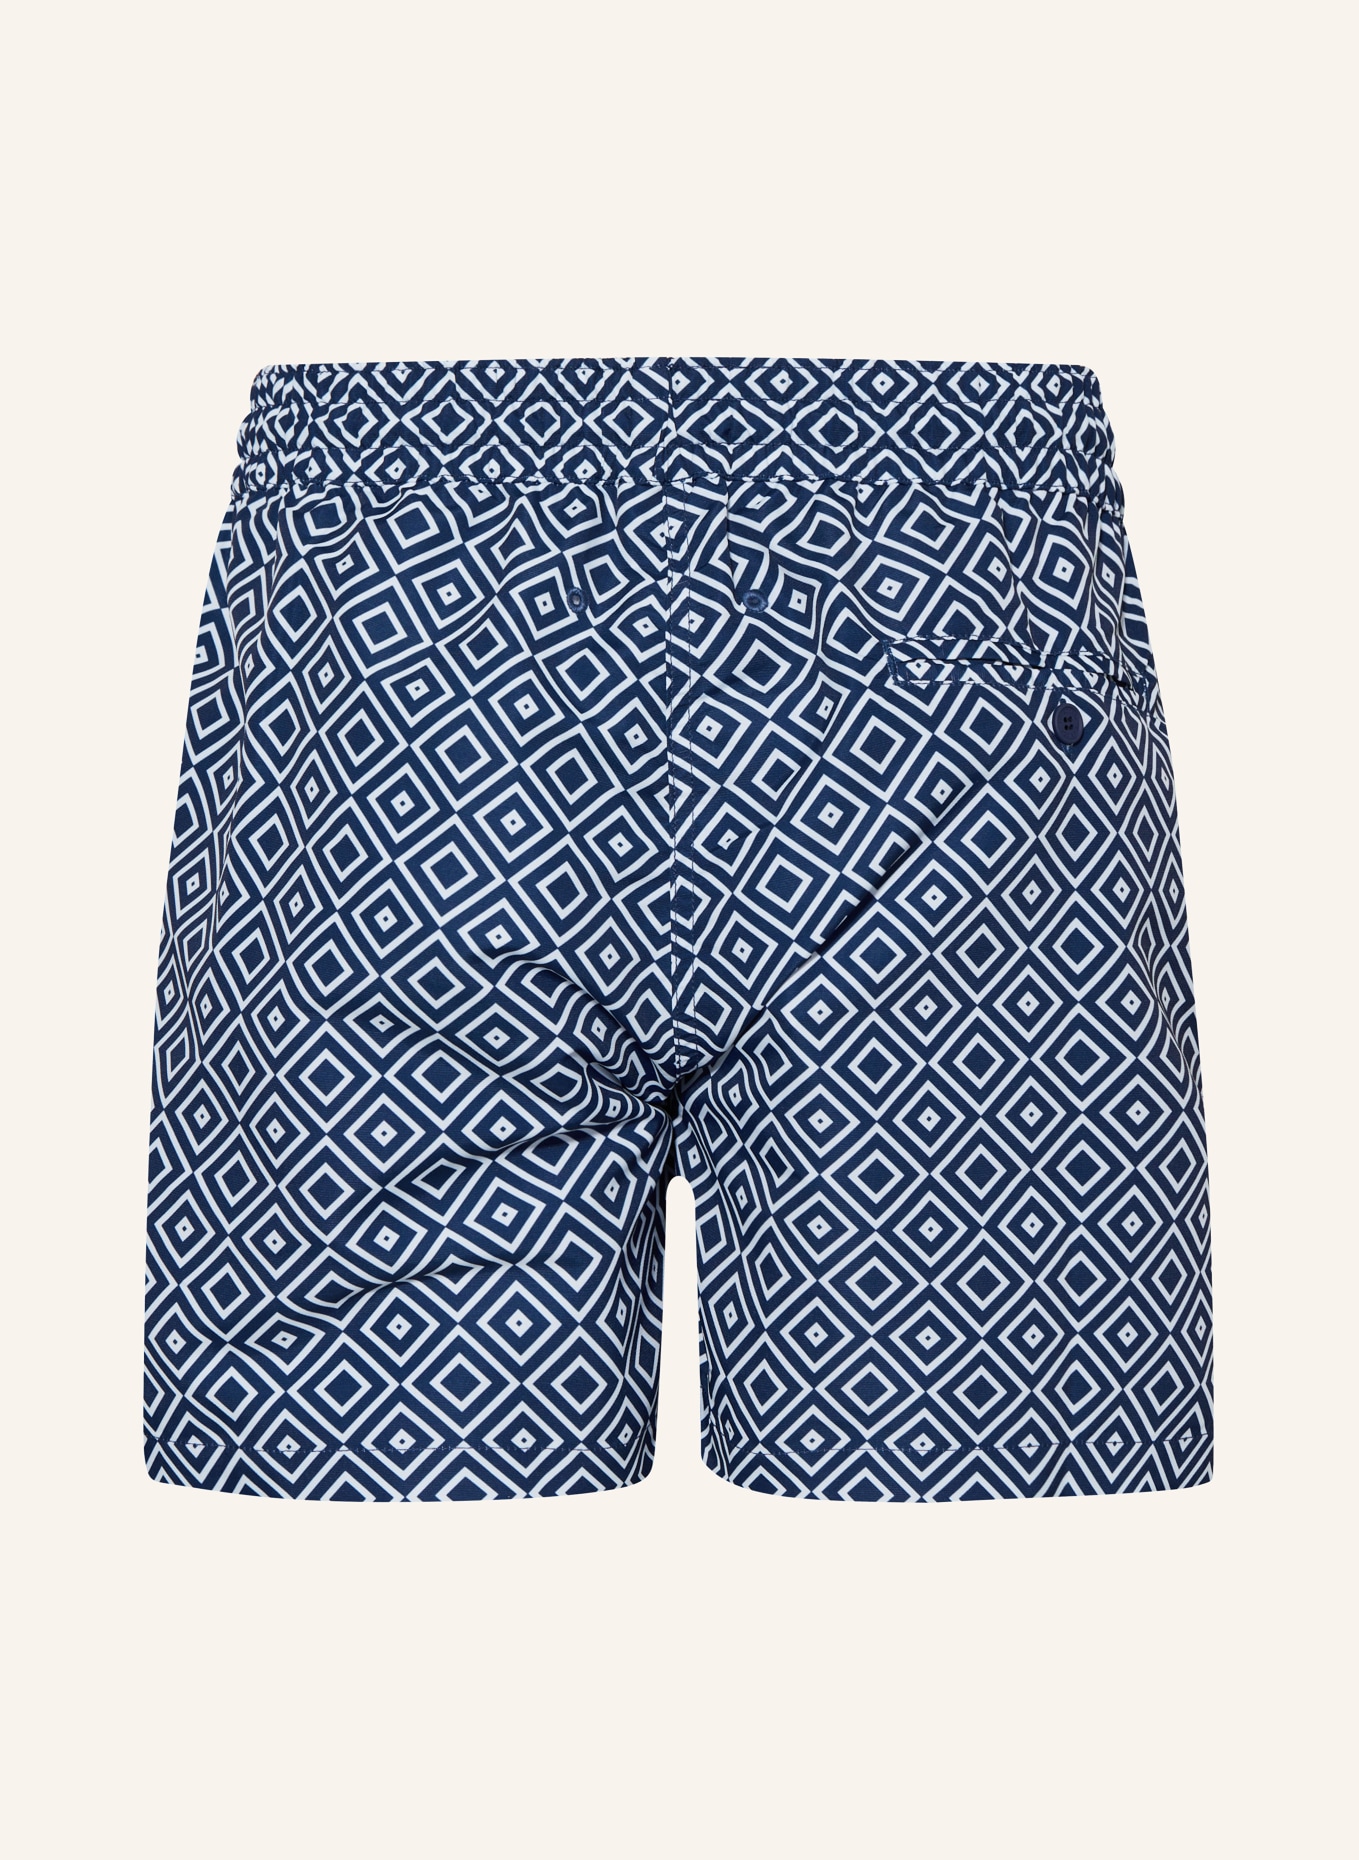 FRESCOBOL CARIOCA Swim shorts ANGRA SPORT, Color: BLUE/ WHITE (Image 2)